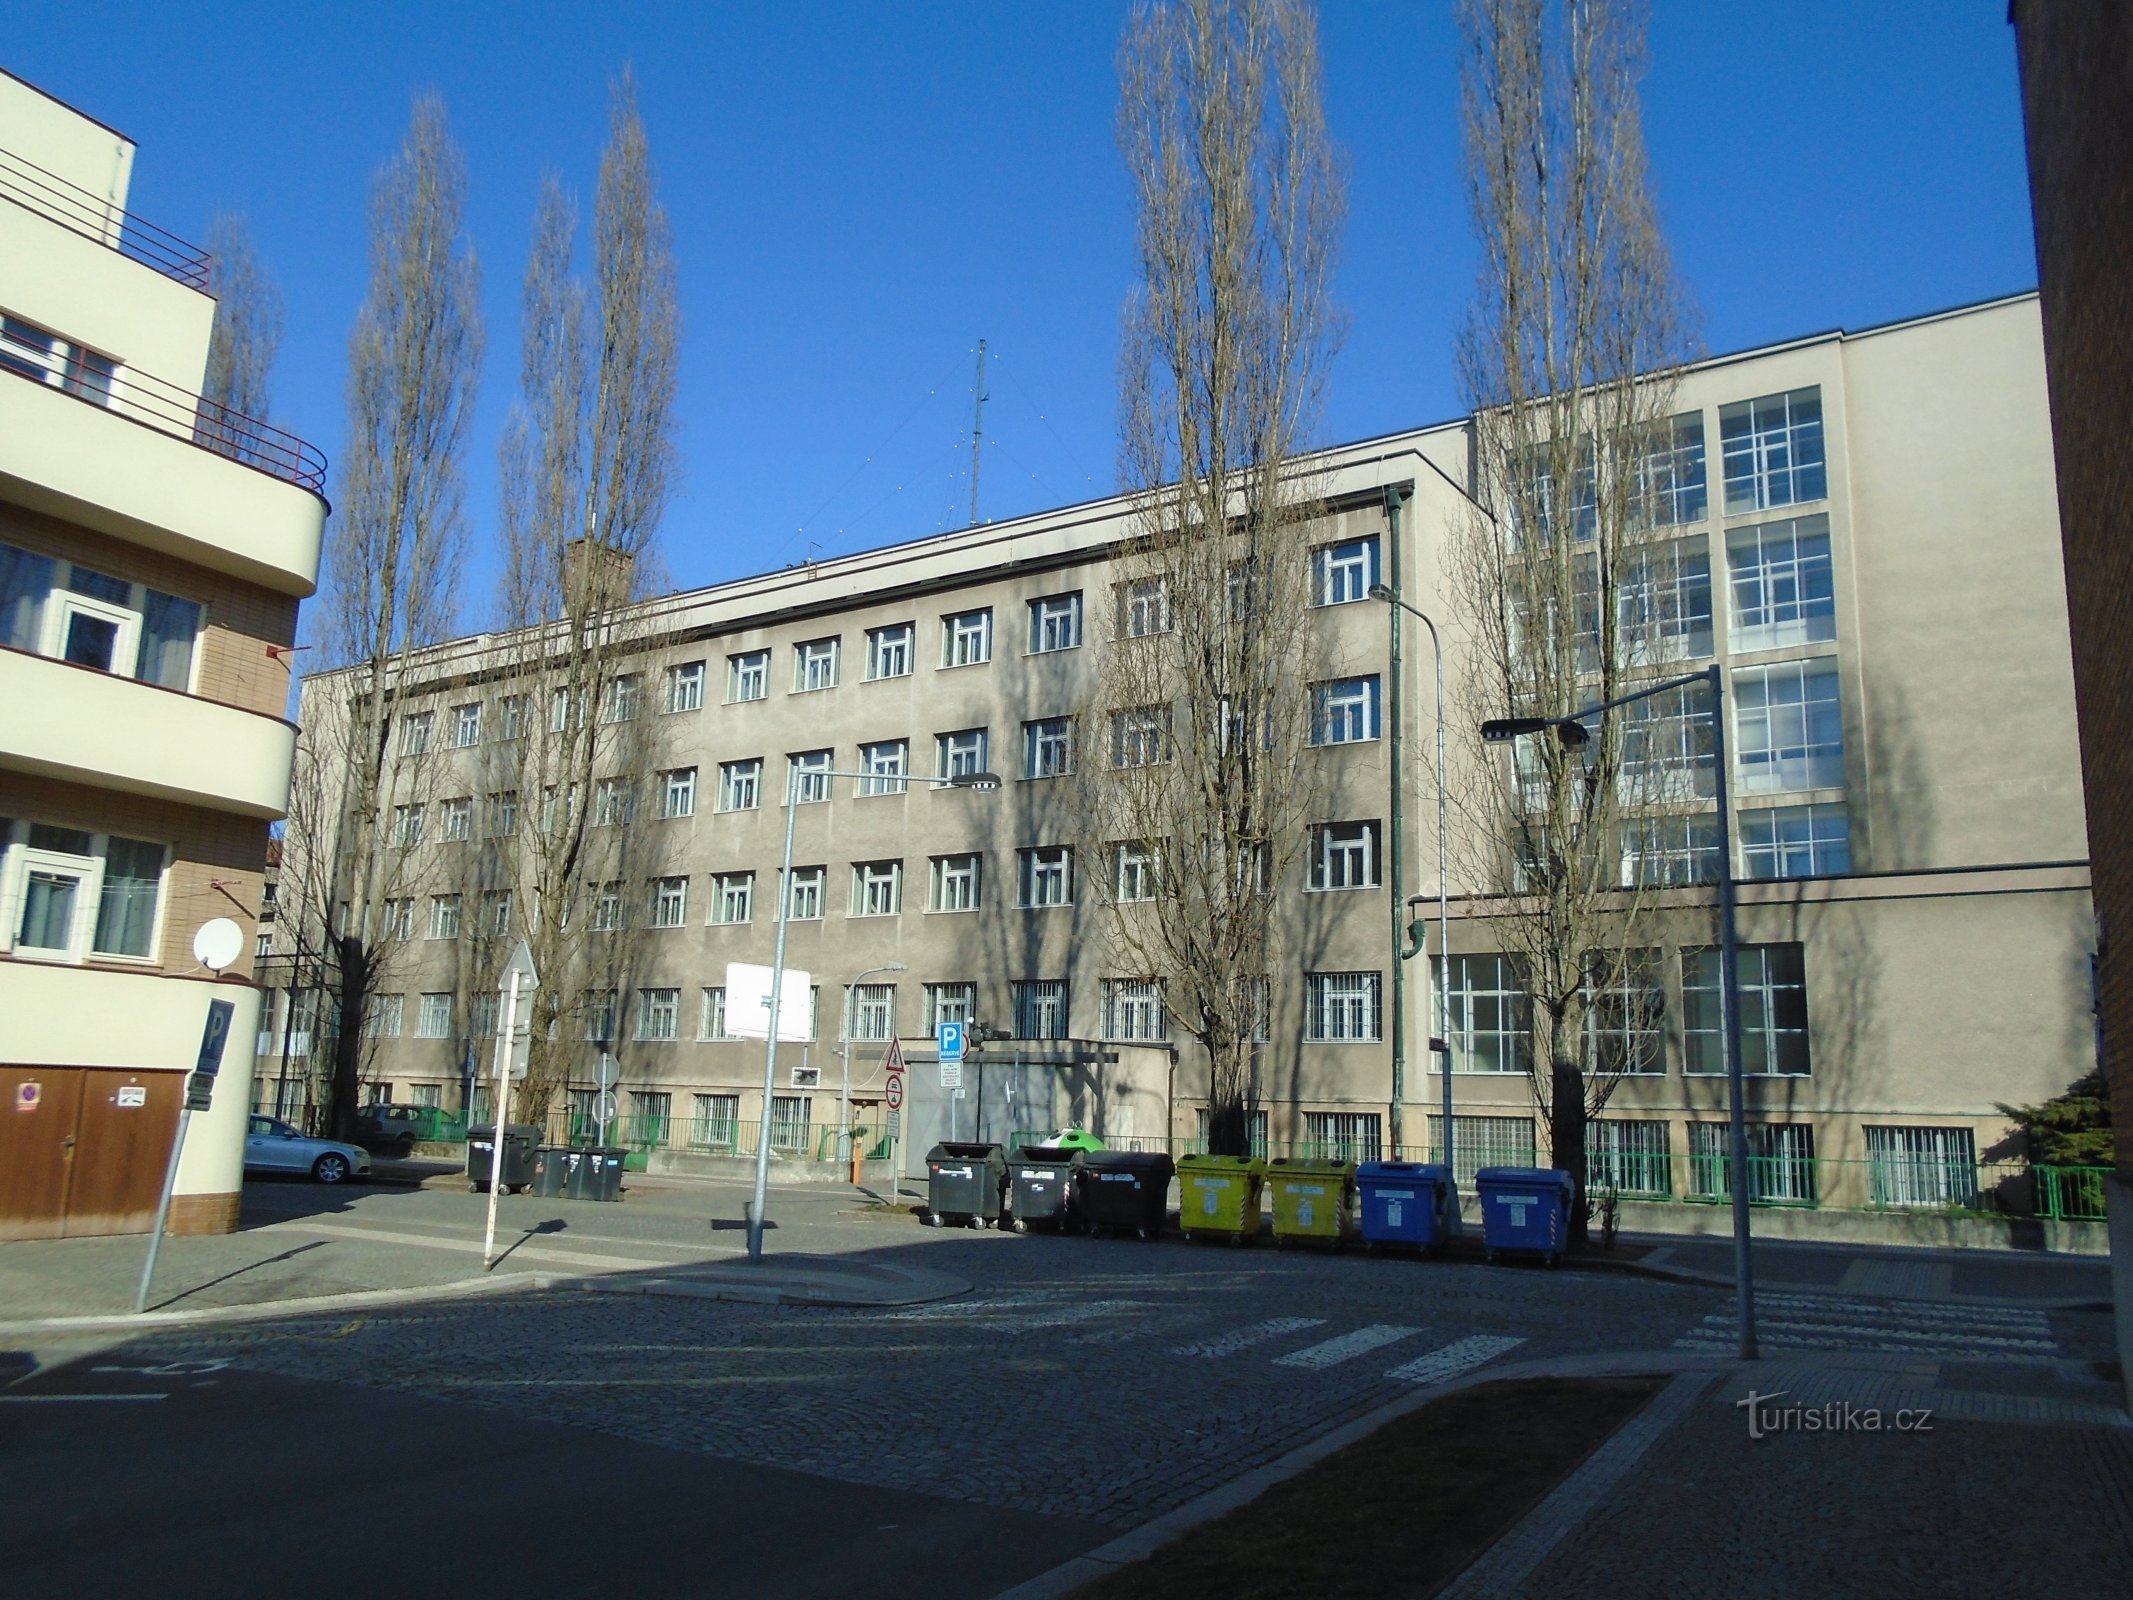 Ulrichovo náměstí № 810 (Градец Кралове, 25.2.2018)